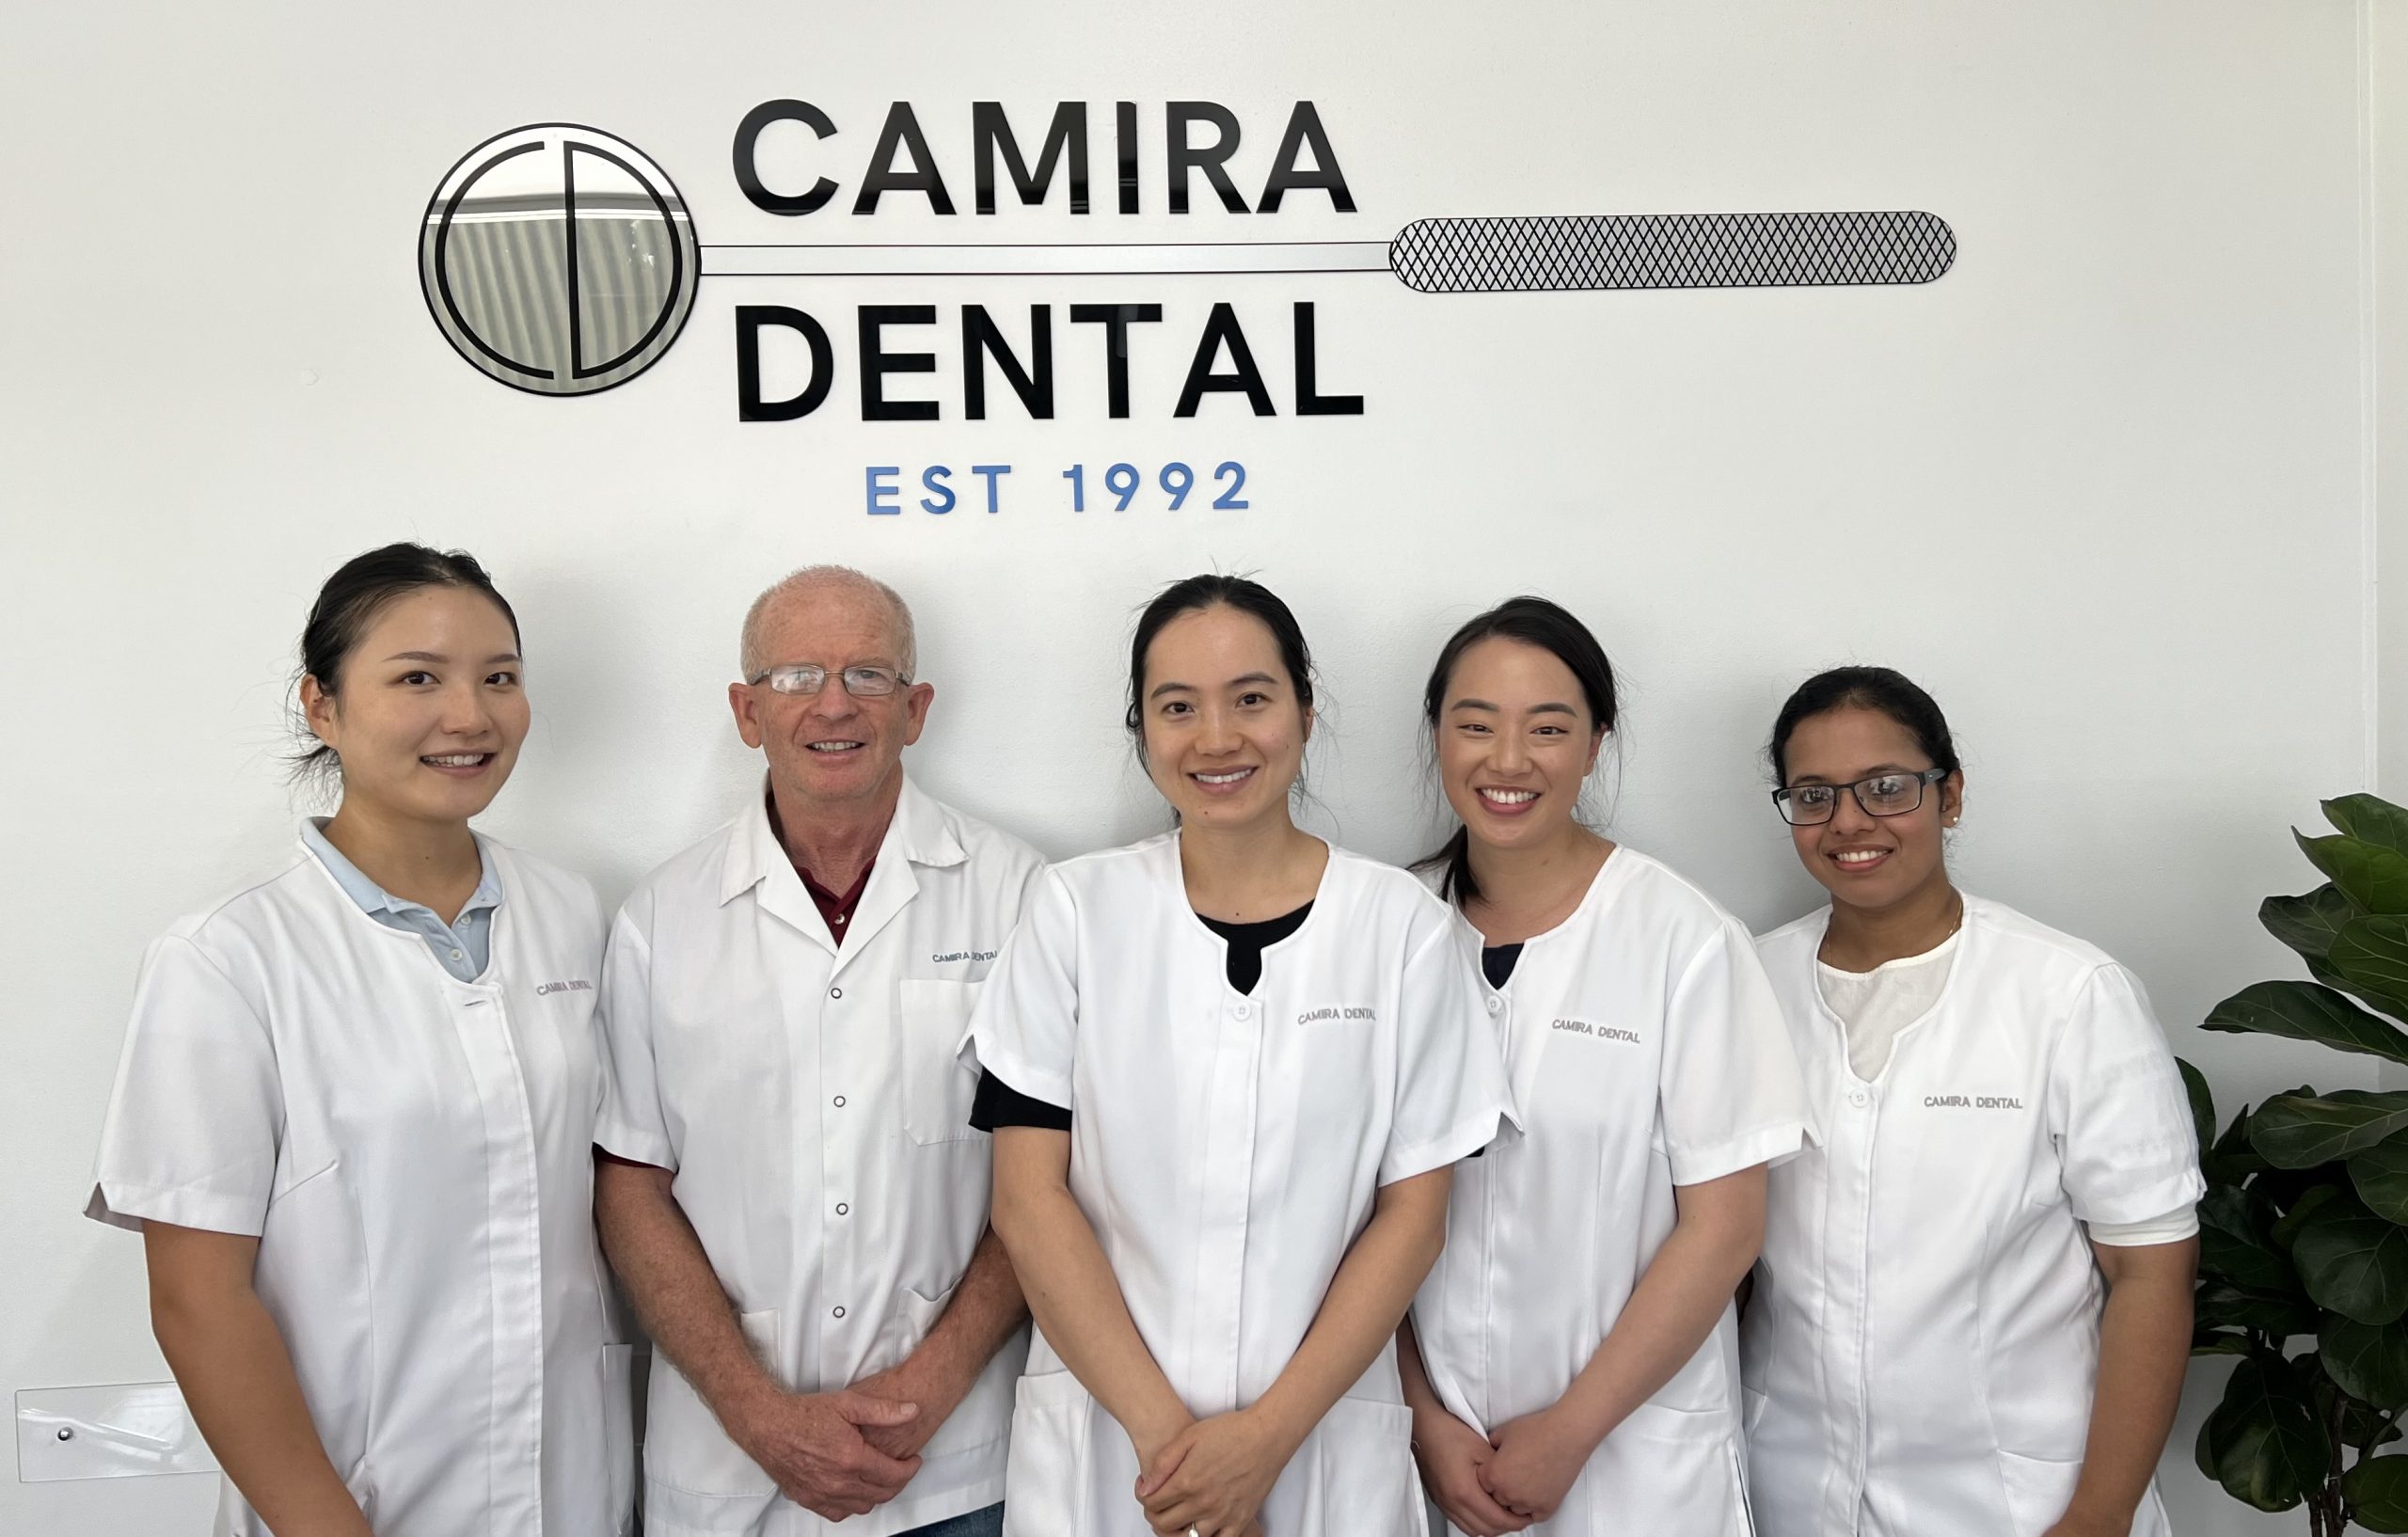 Camira dental team